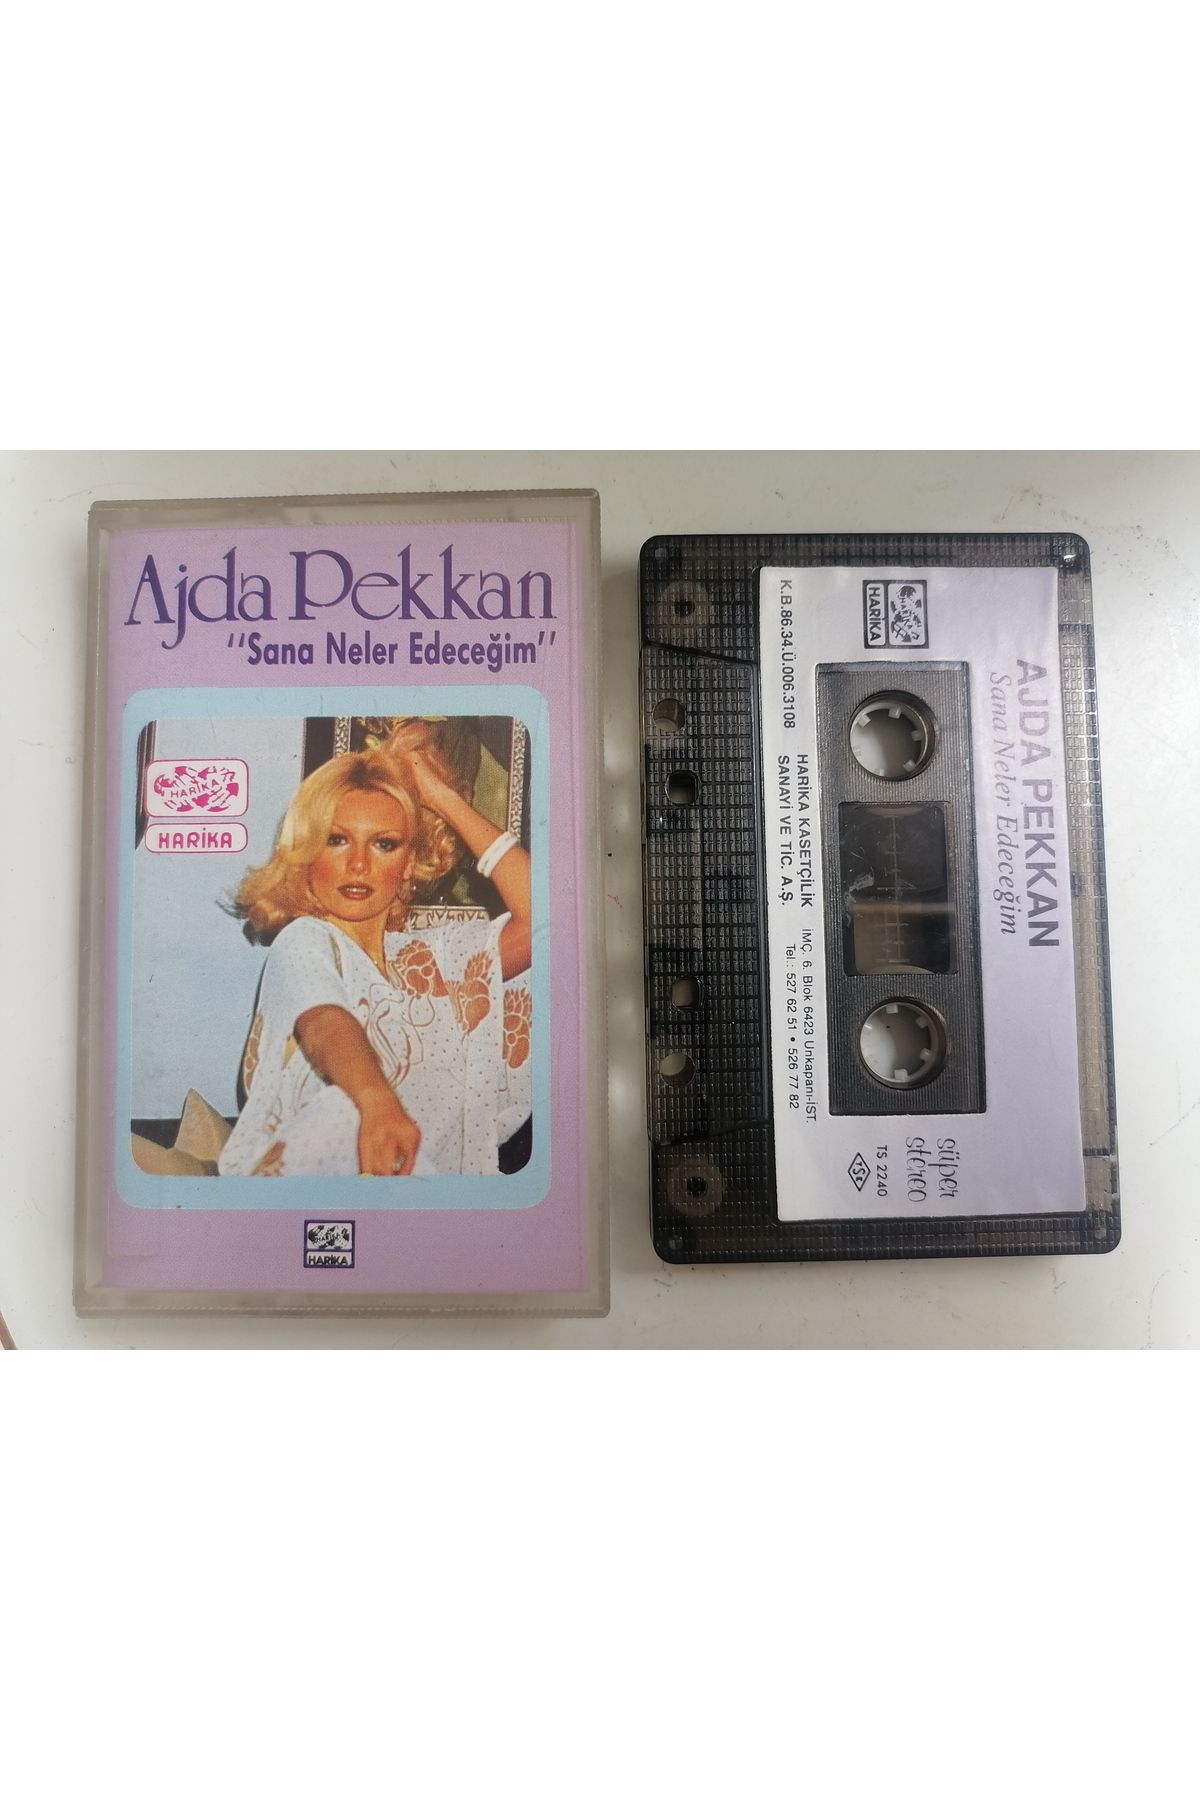 Cassette AJDA PEKKAN - Sana Neler Edeceğim - 1986 Türkiye Nadir Kağıtlı Basım Kaset Albüm 2. EL